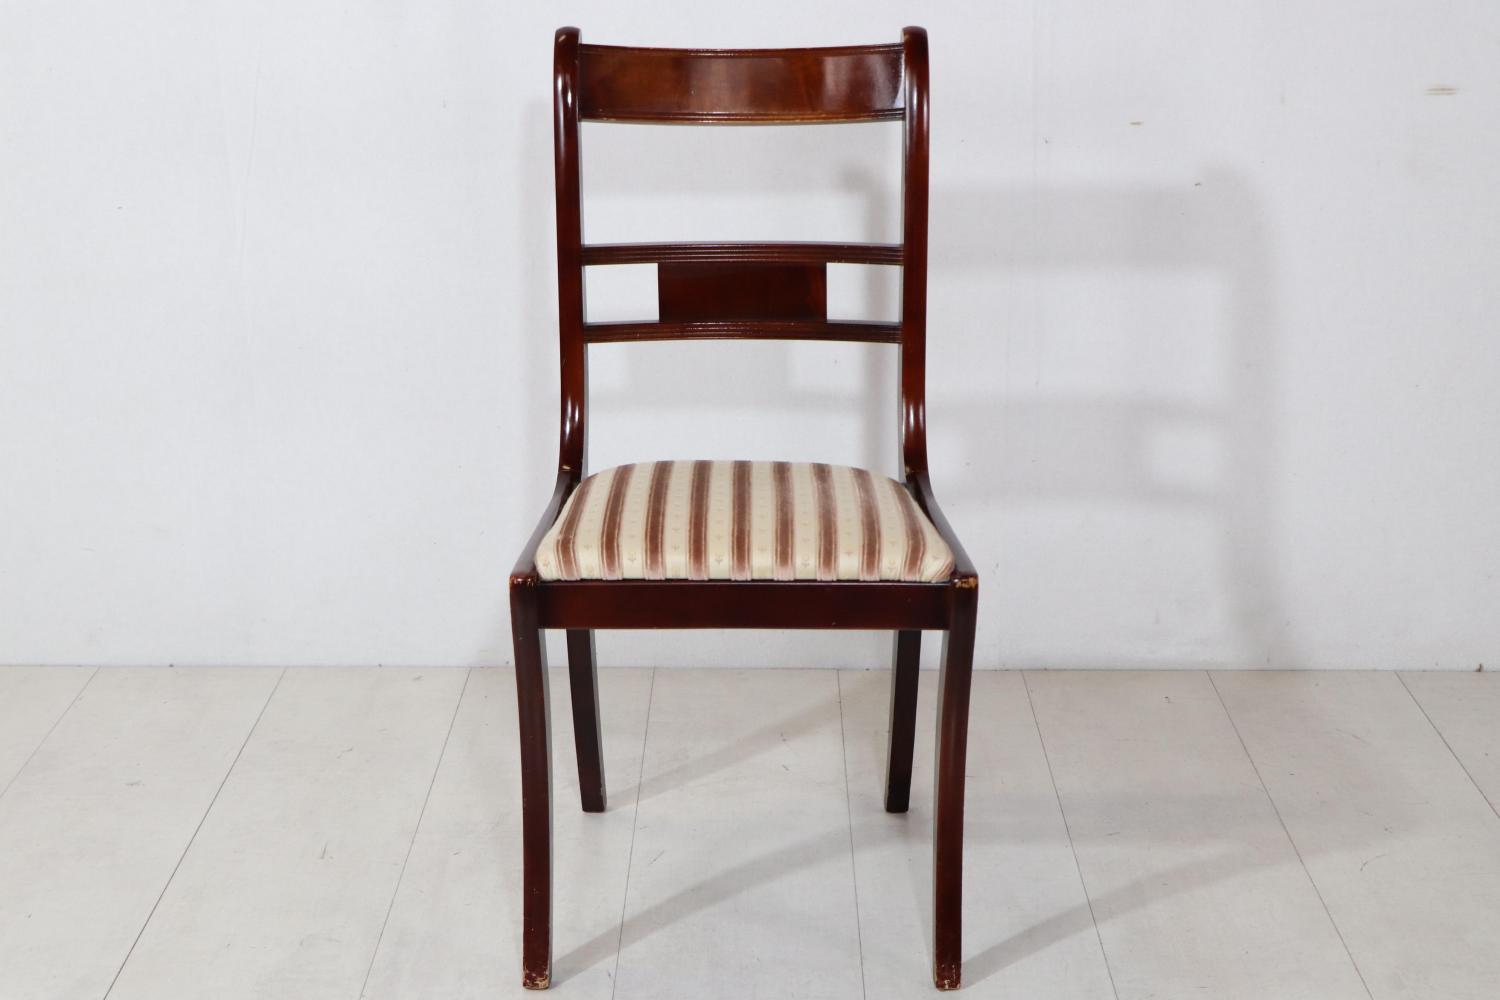 Englischer Single Chair im Regency Style, in Mahagoni, mit eleganten Sabre Legs - sofort lieferbar